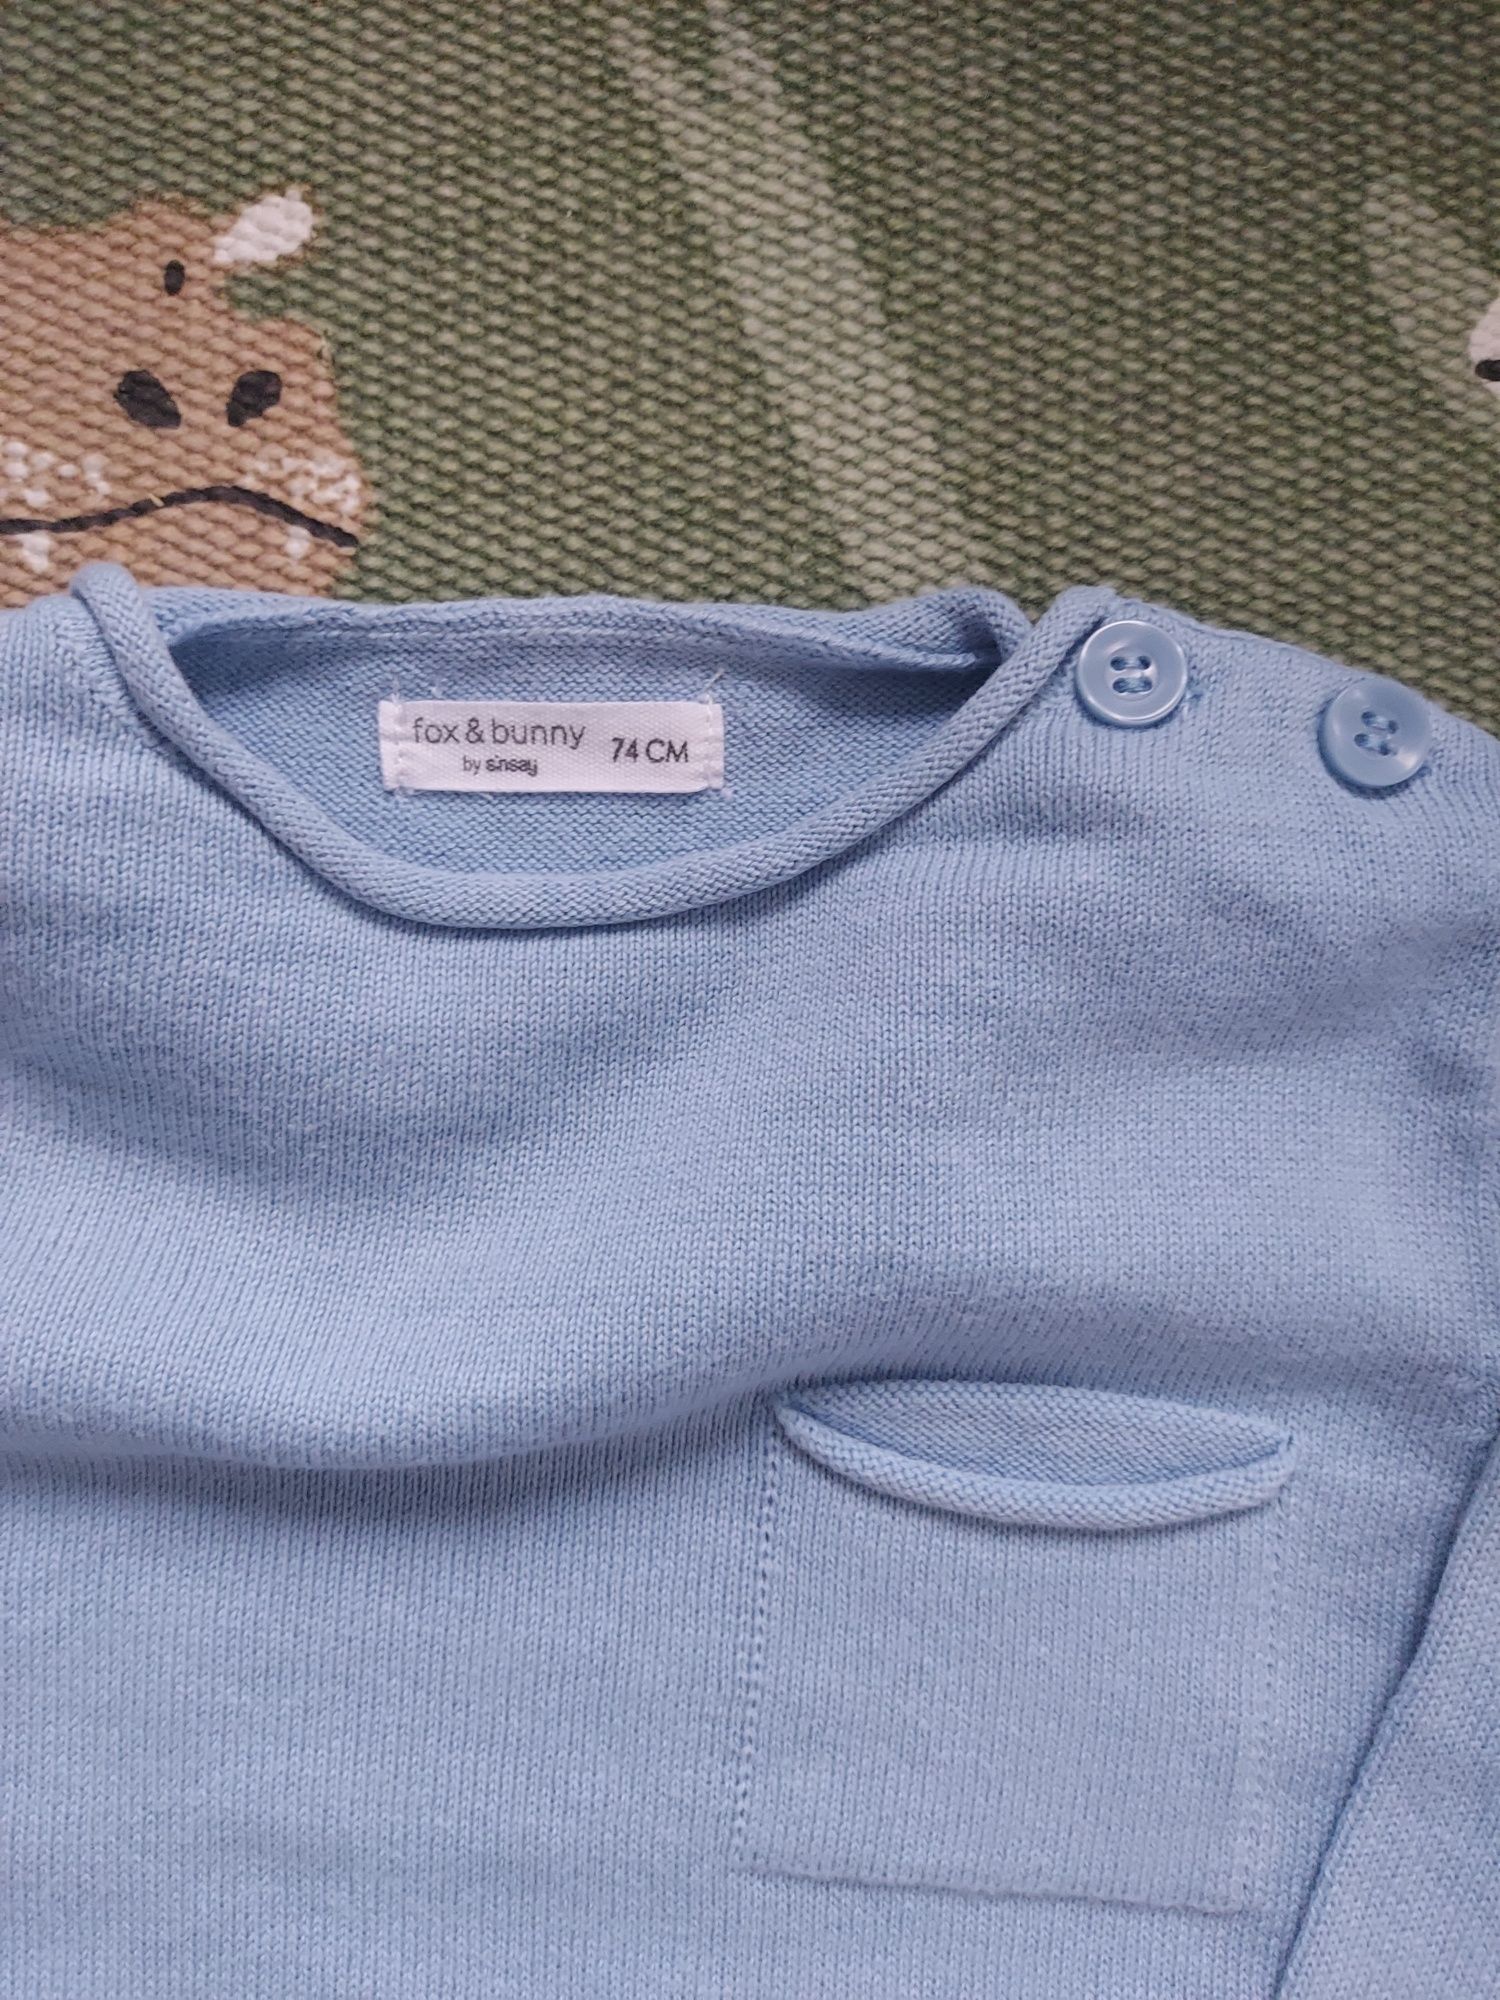 Sweter sweterek niemowlęcy błękitny Sinsay fox & bunny roz. 74